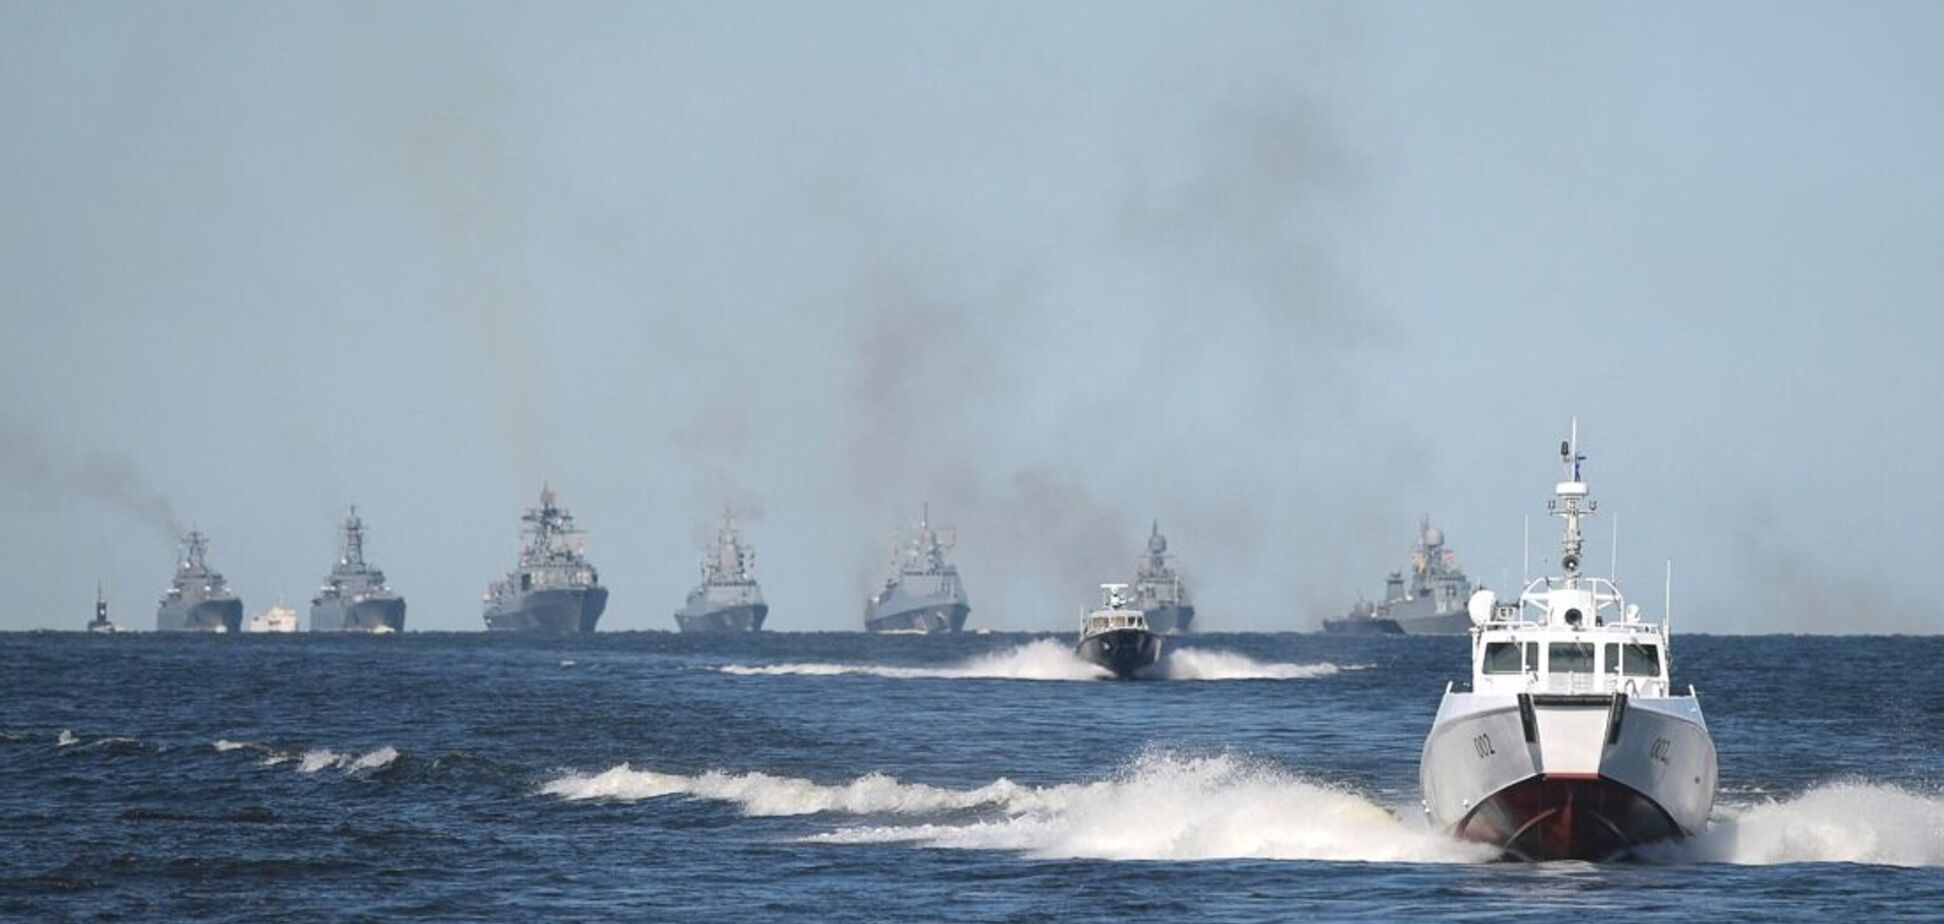 Імовірність початку військових дій із боку Росії в Чорному морі становить 70-80%